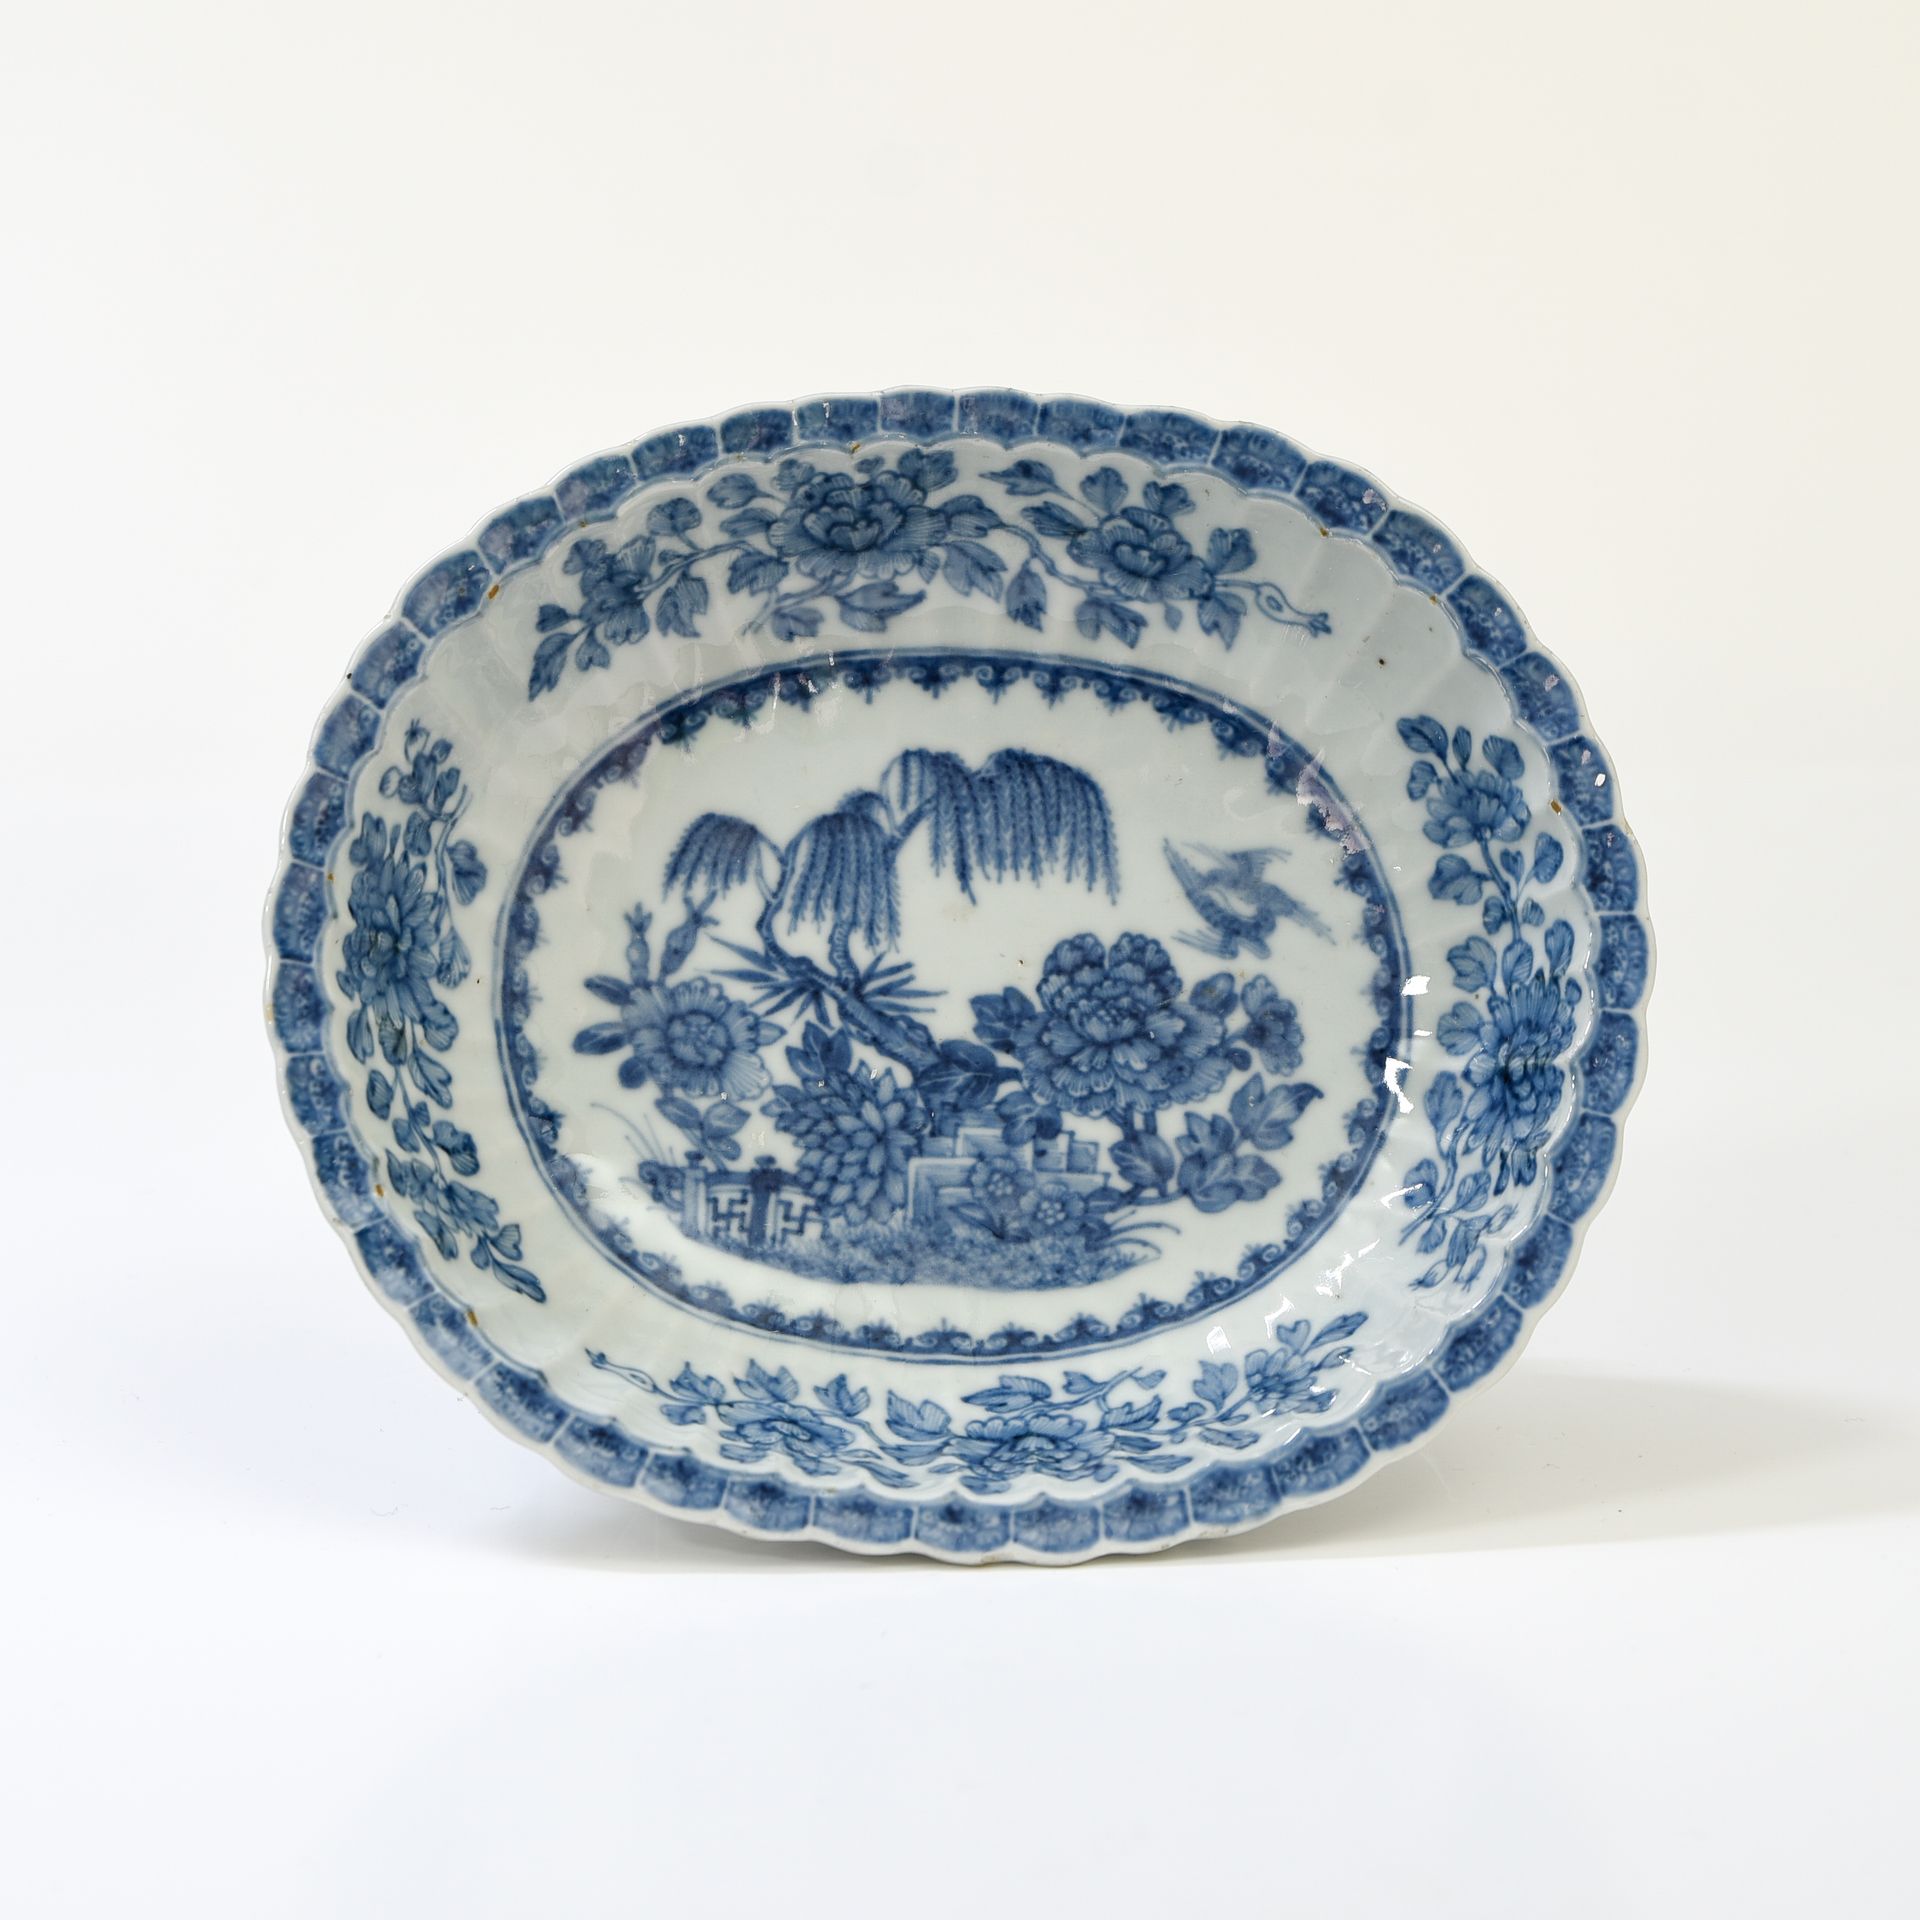 Null 中国，印度公司--乾隆时期（1736-1795）。

椭圆形和多叶形的碗



瓷器上用蓝色釉下彩装饰有牡丹和垂柳的岩石，秋季装饰有四枝牡丹和矛头的中&hellip;